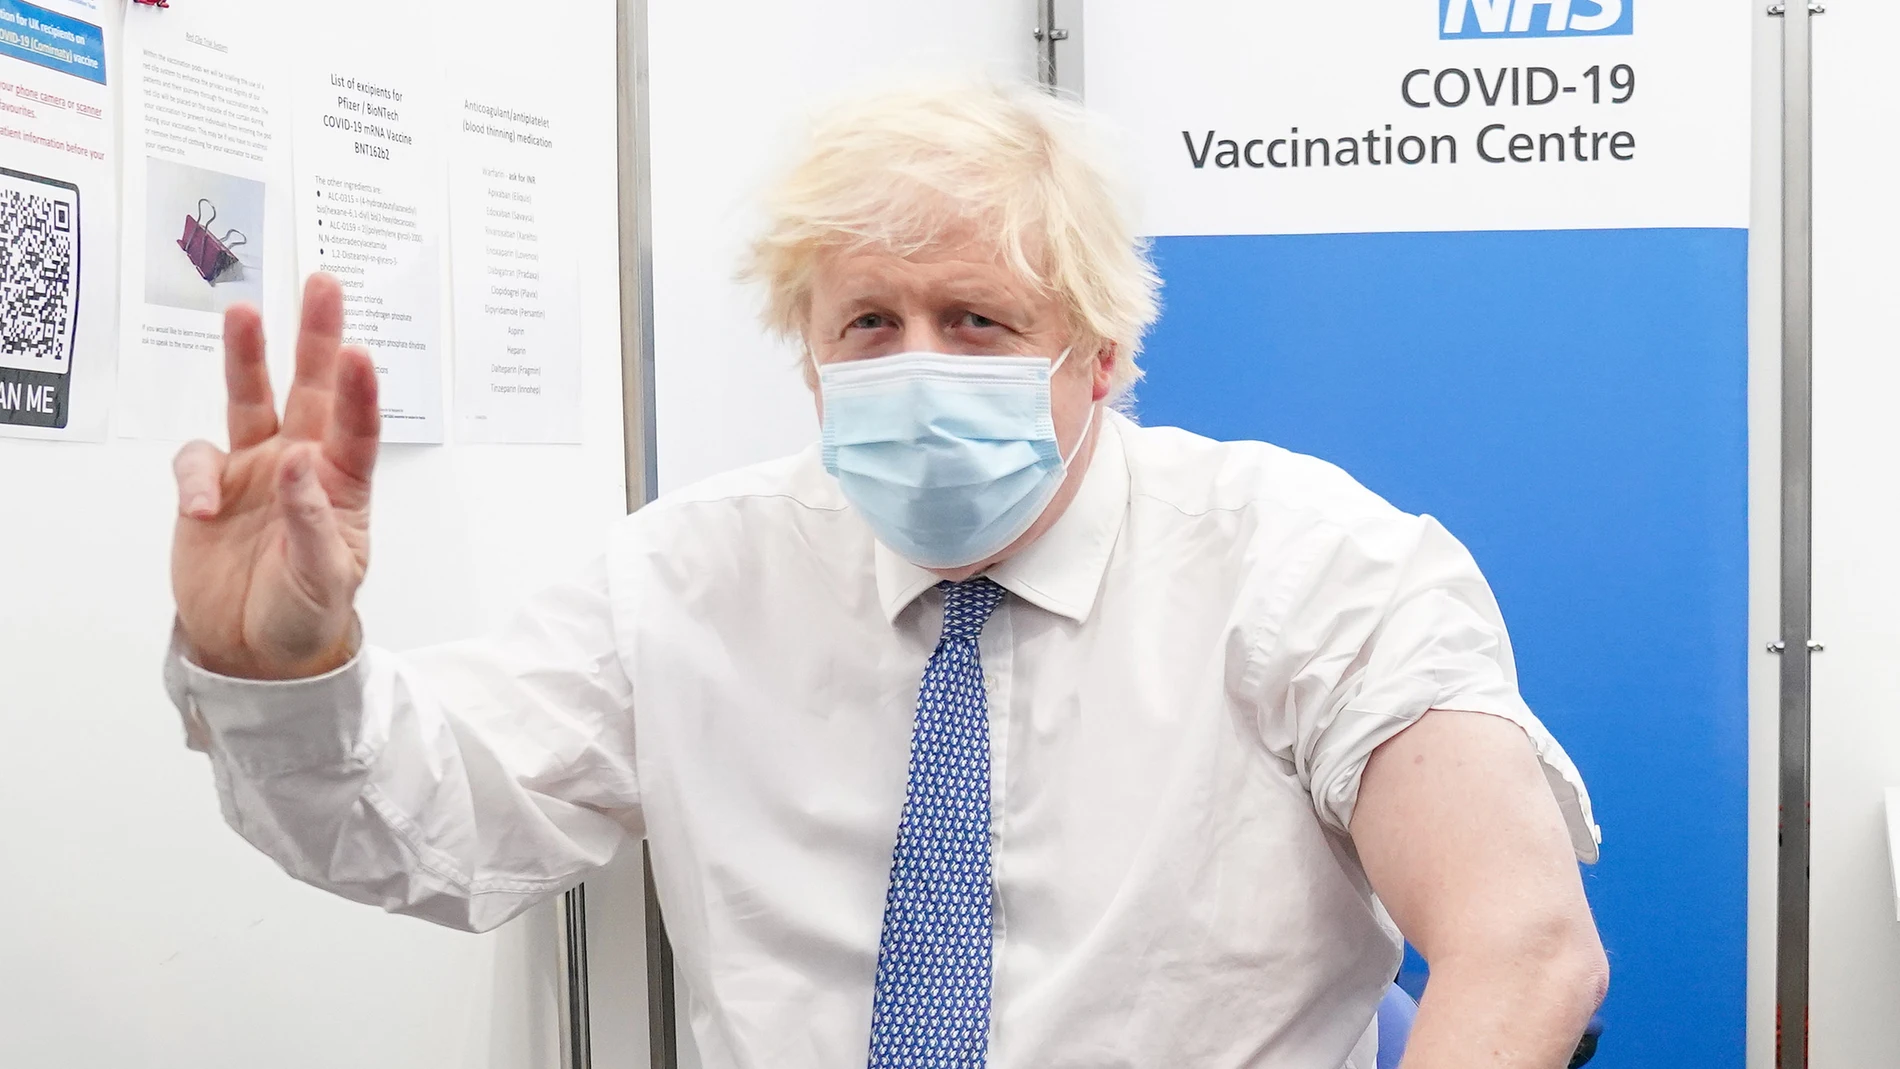 “Fantástico. Muchas gracias”, le dijo Boris Johnson a la enfermera, antes de recibir una placa que decía “He reforzado mi inmunidad” contra el coronavirus